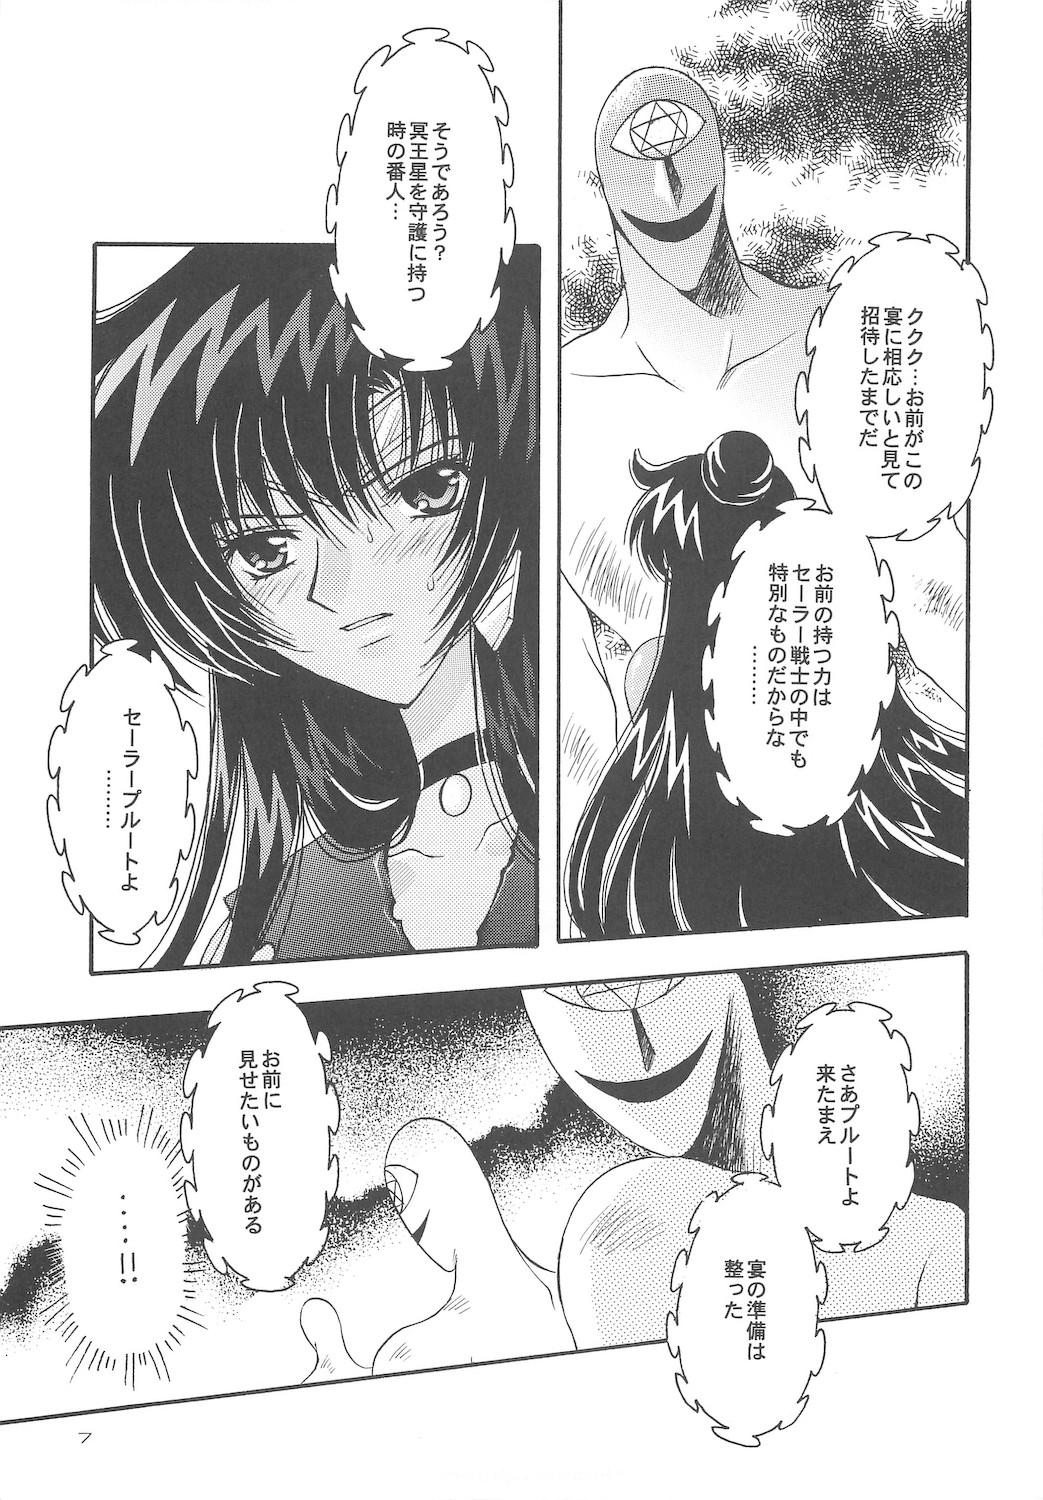 Retro Owaru Sekai dai 4 shou - Sailor moon Publico - Page 7